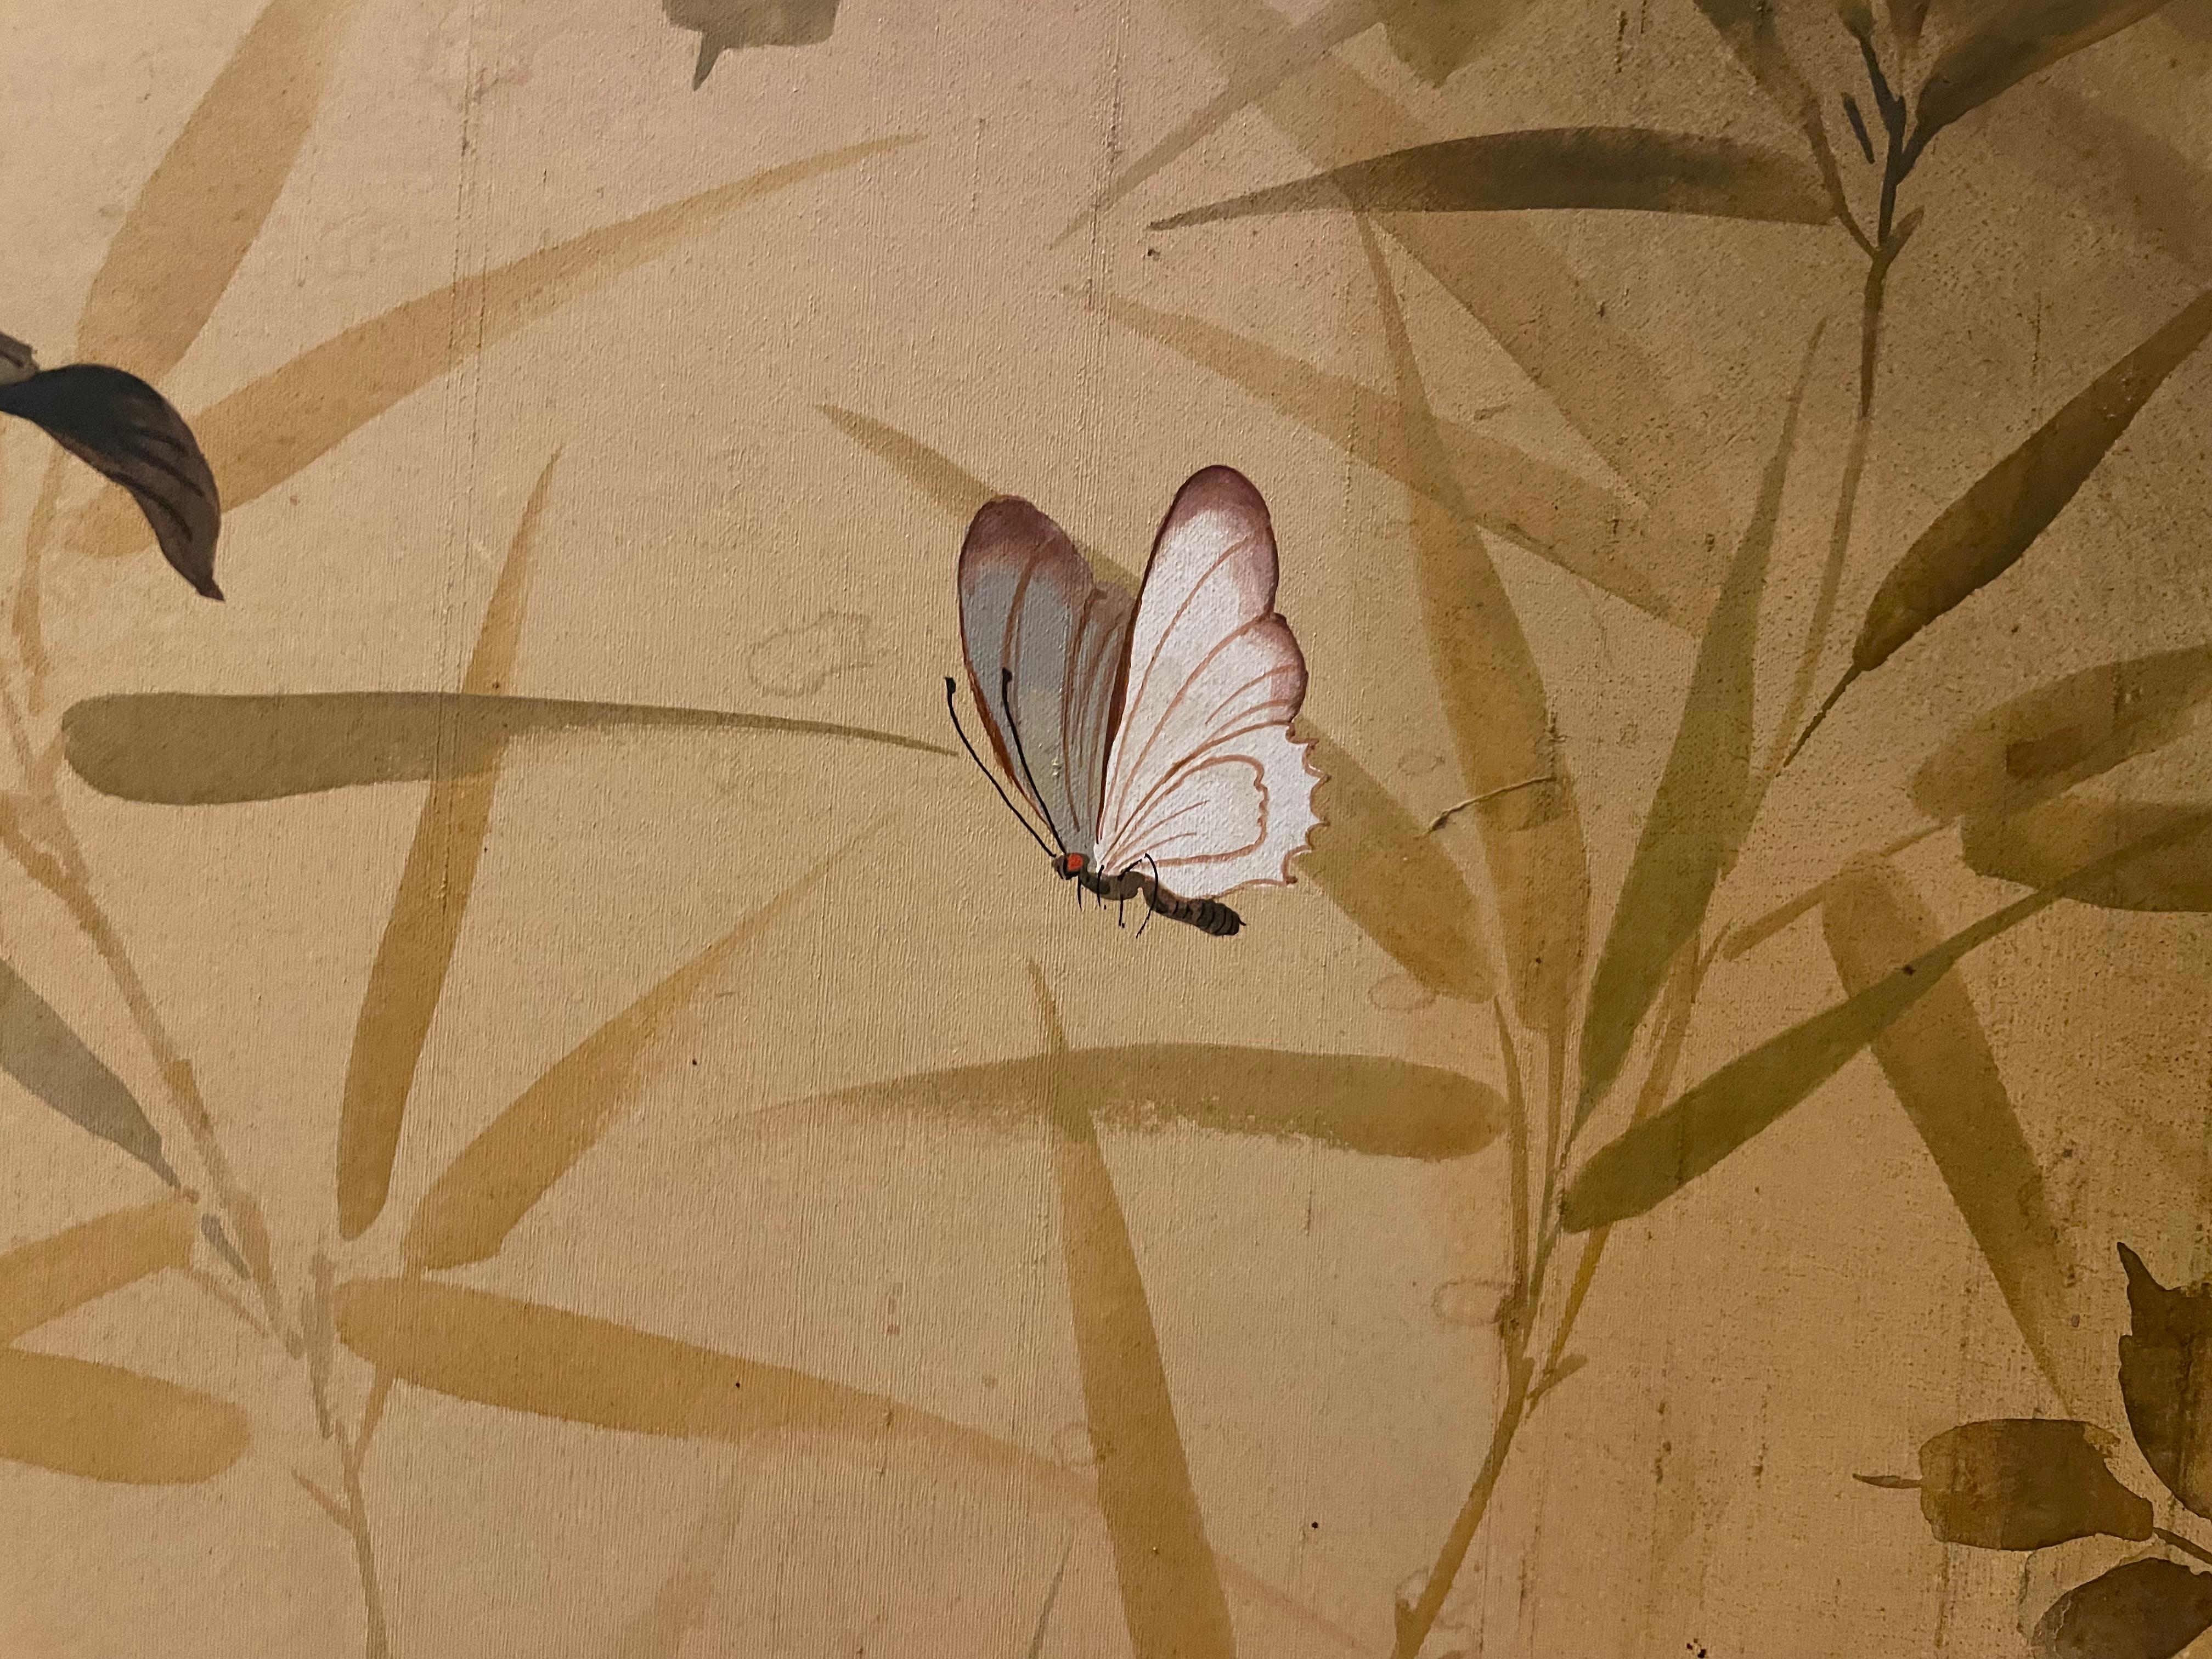 Kee Wu Wah war ein chinesischer Künstler, der für seine Blumenmalerei auf Leinwand und Seide bekannt war. Signiert in der oberen Ecke.

Original-Ölgemälde im traditionellen chinesischen klassischen Stil mit romantischen Untertönen auf Seide. Er war